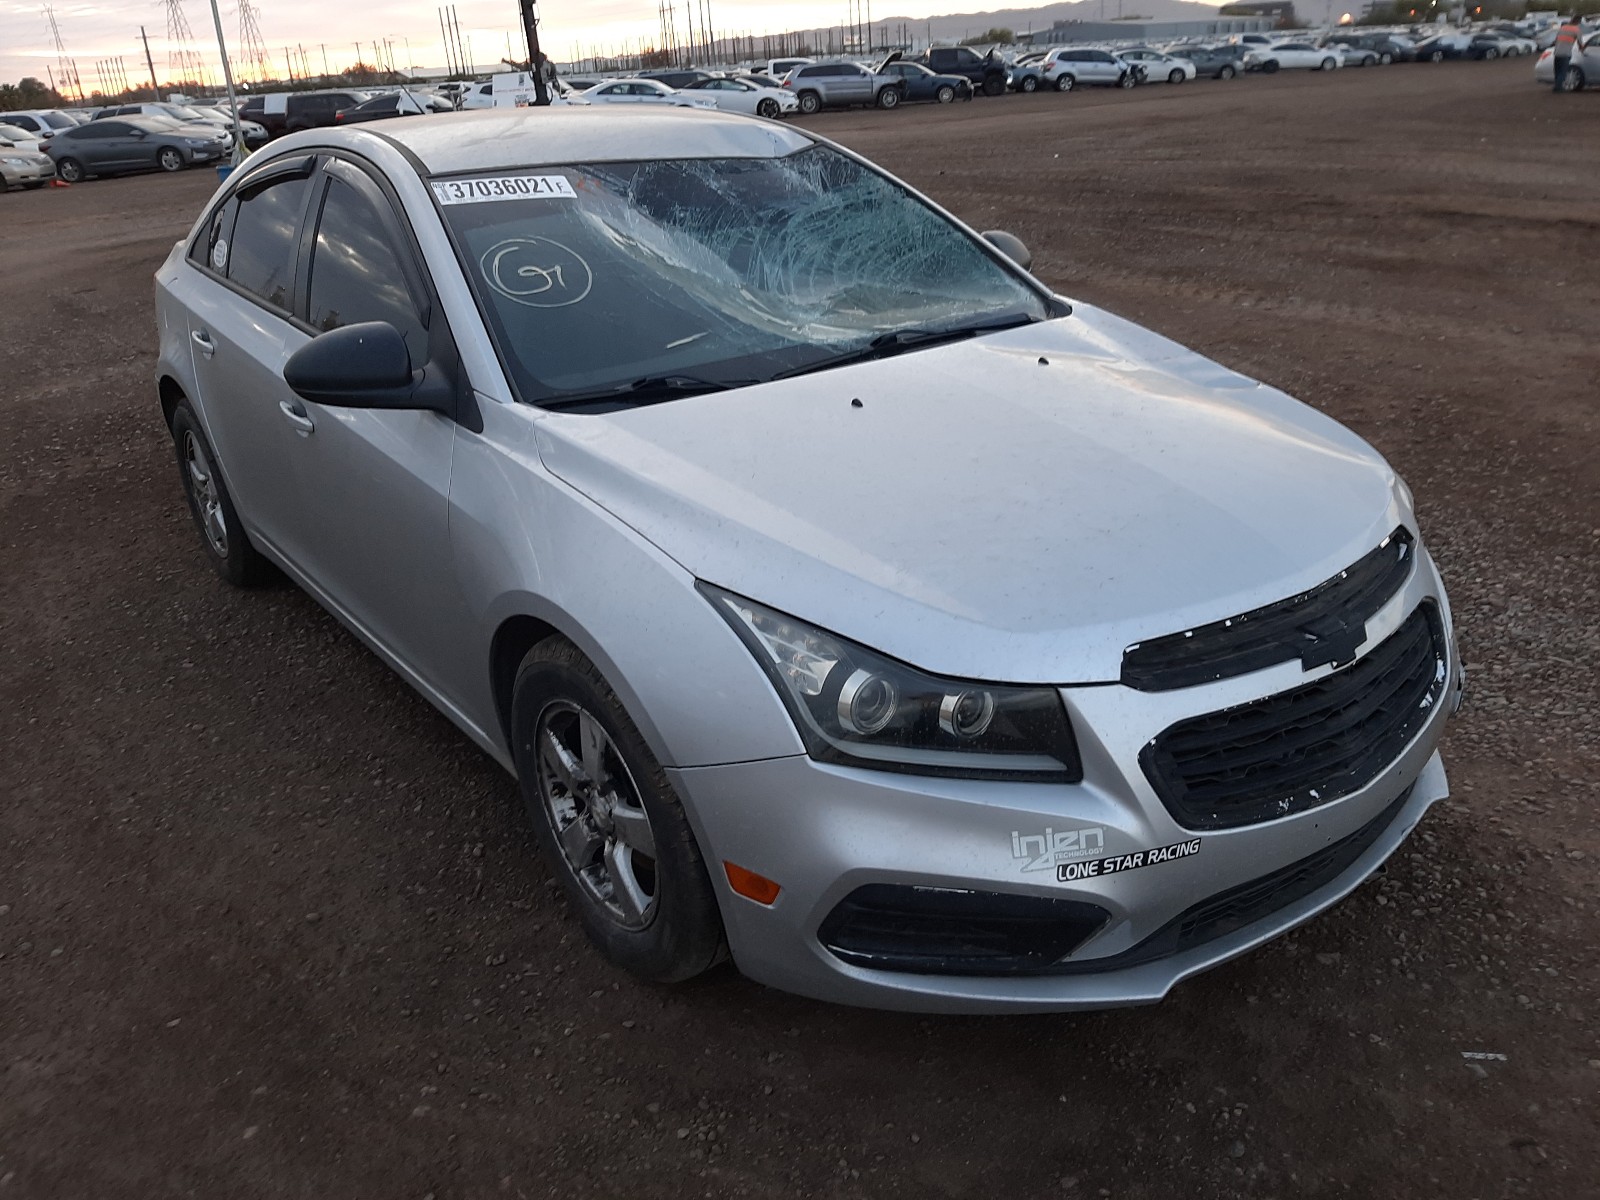 Chevrolet Cruze L 2015, 1G1P15Sg3F7253955 — Auto Auction Spot